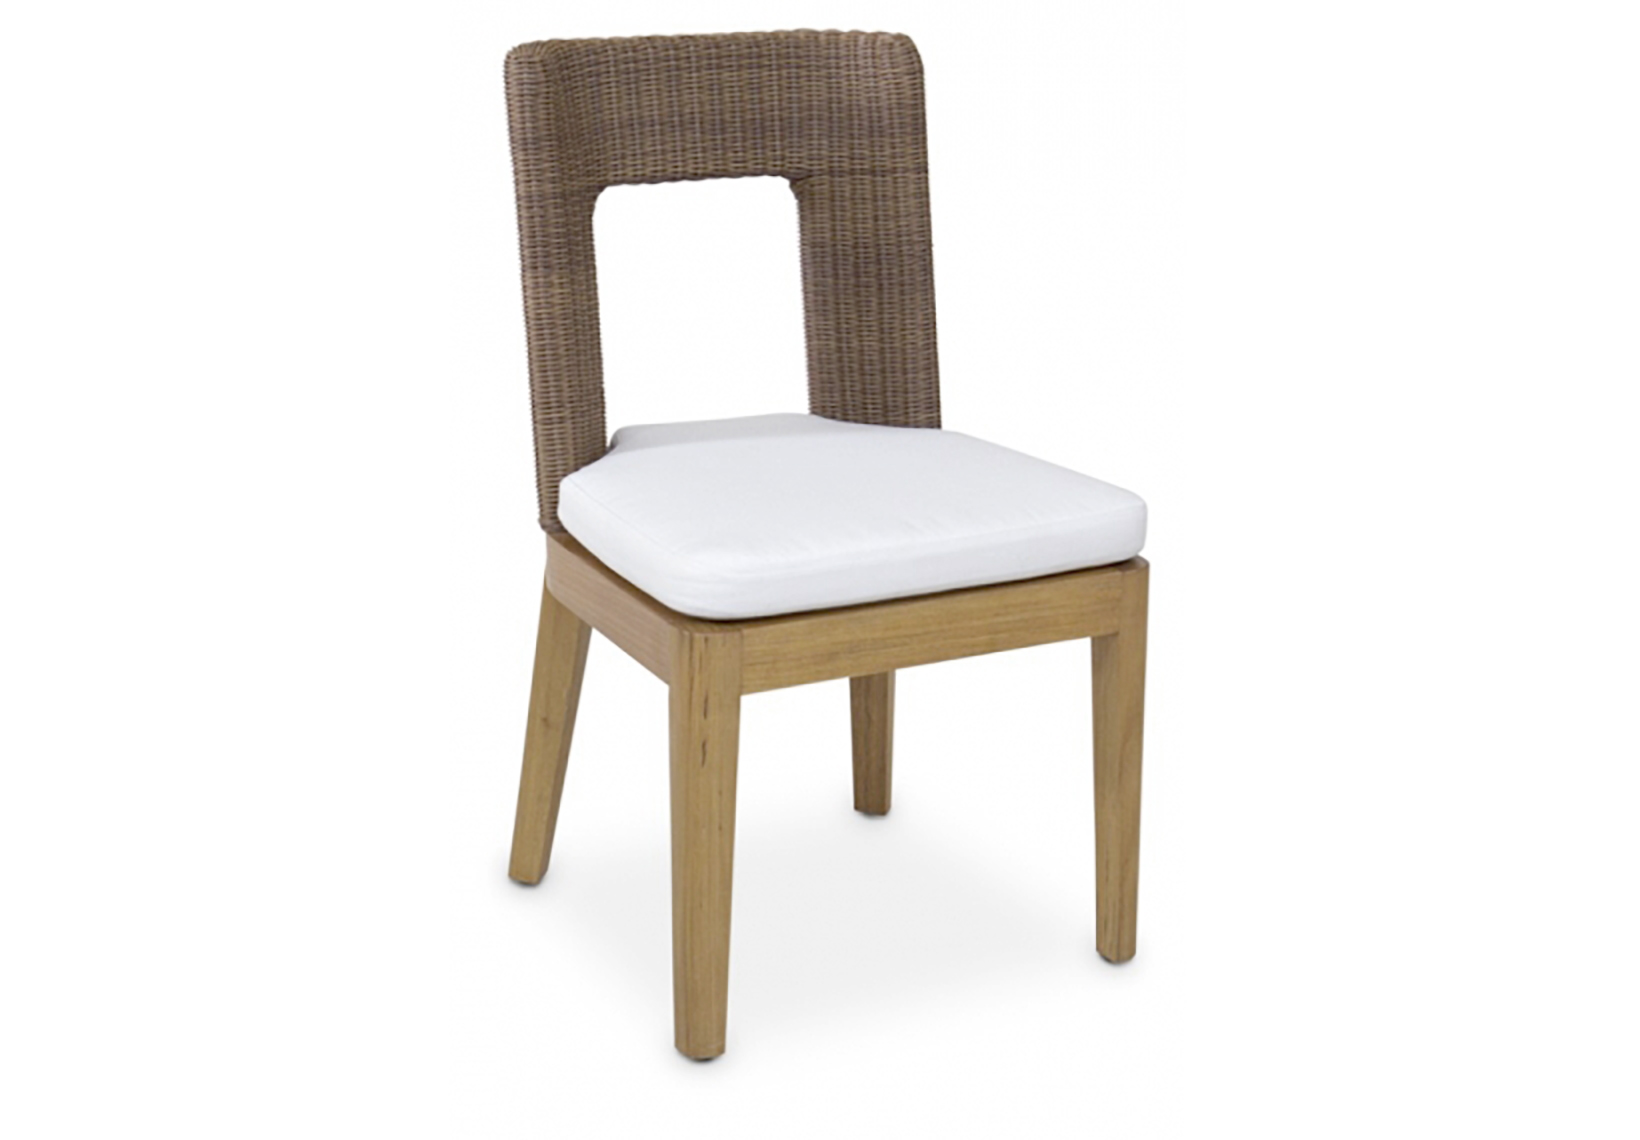 Teabu Chair